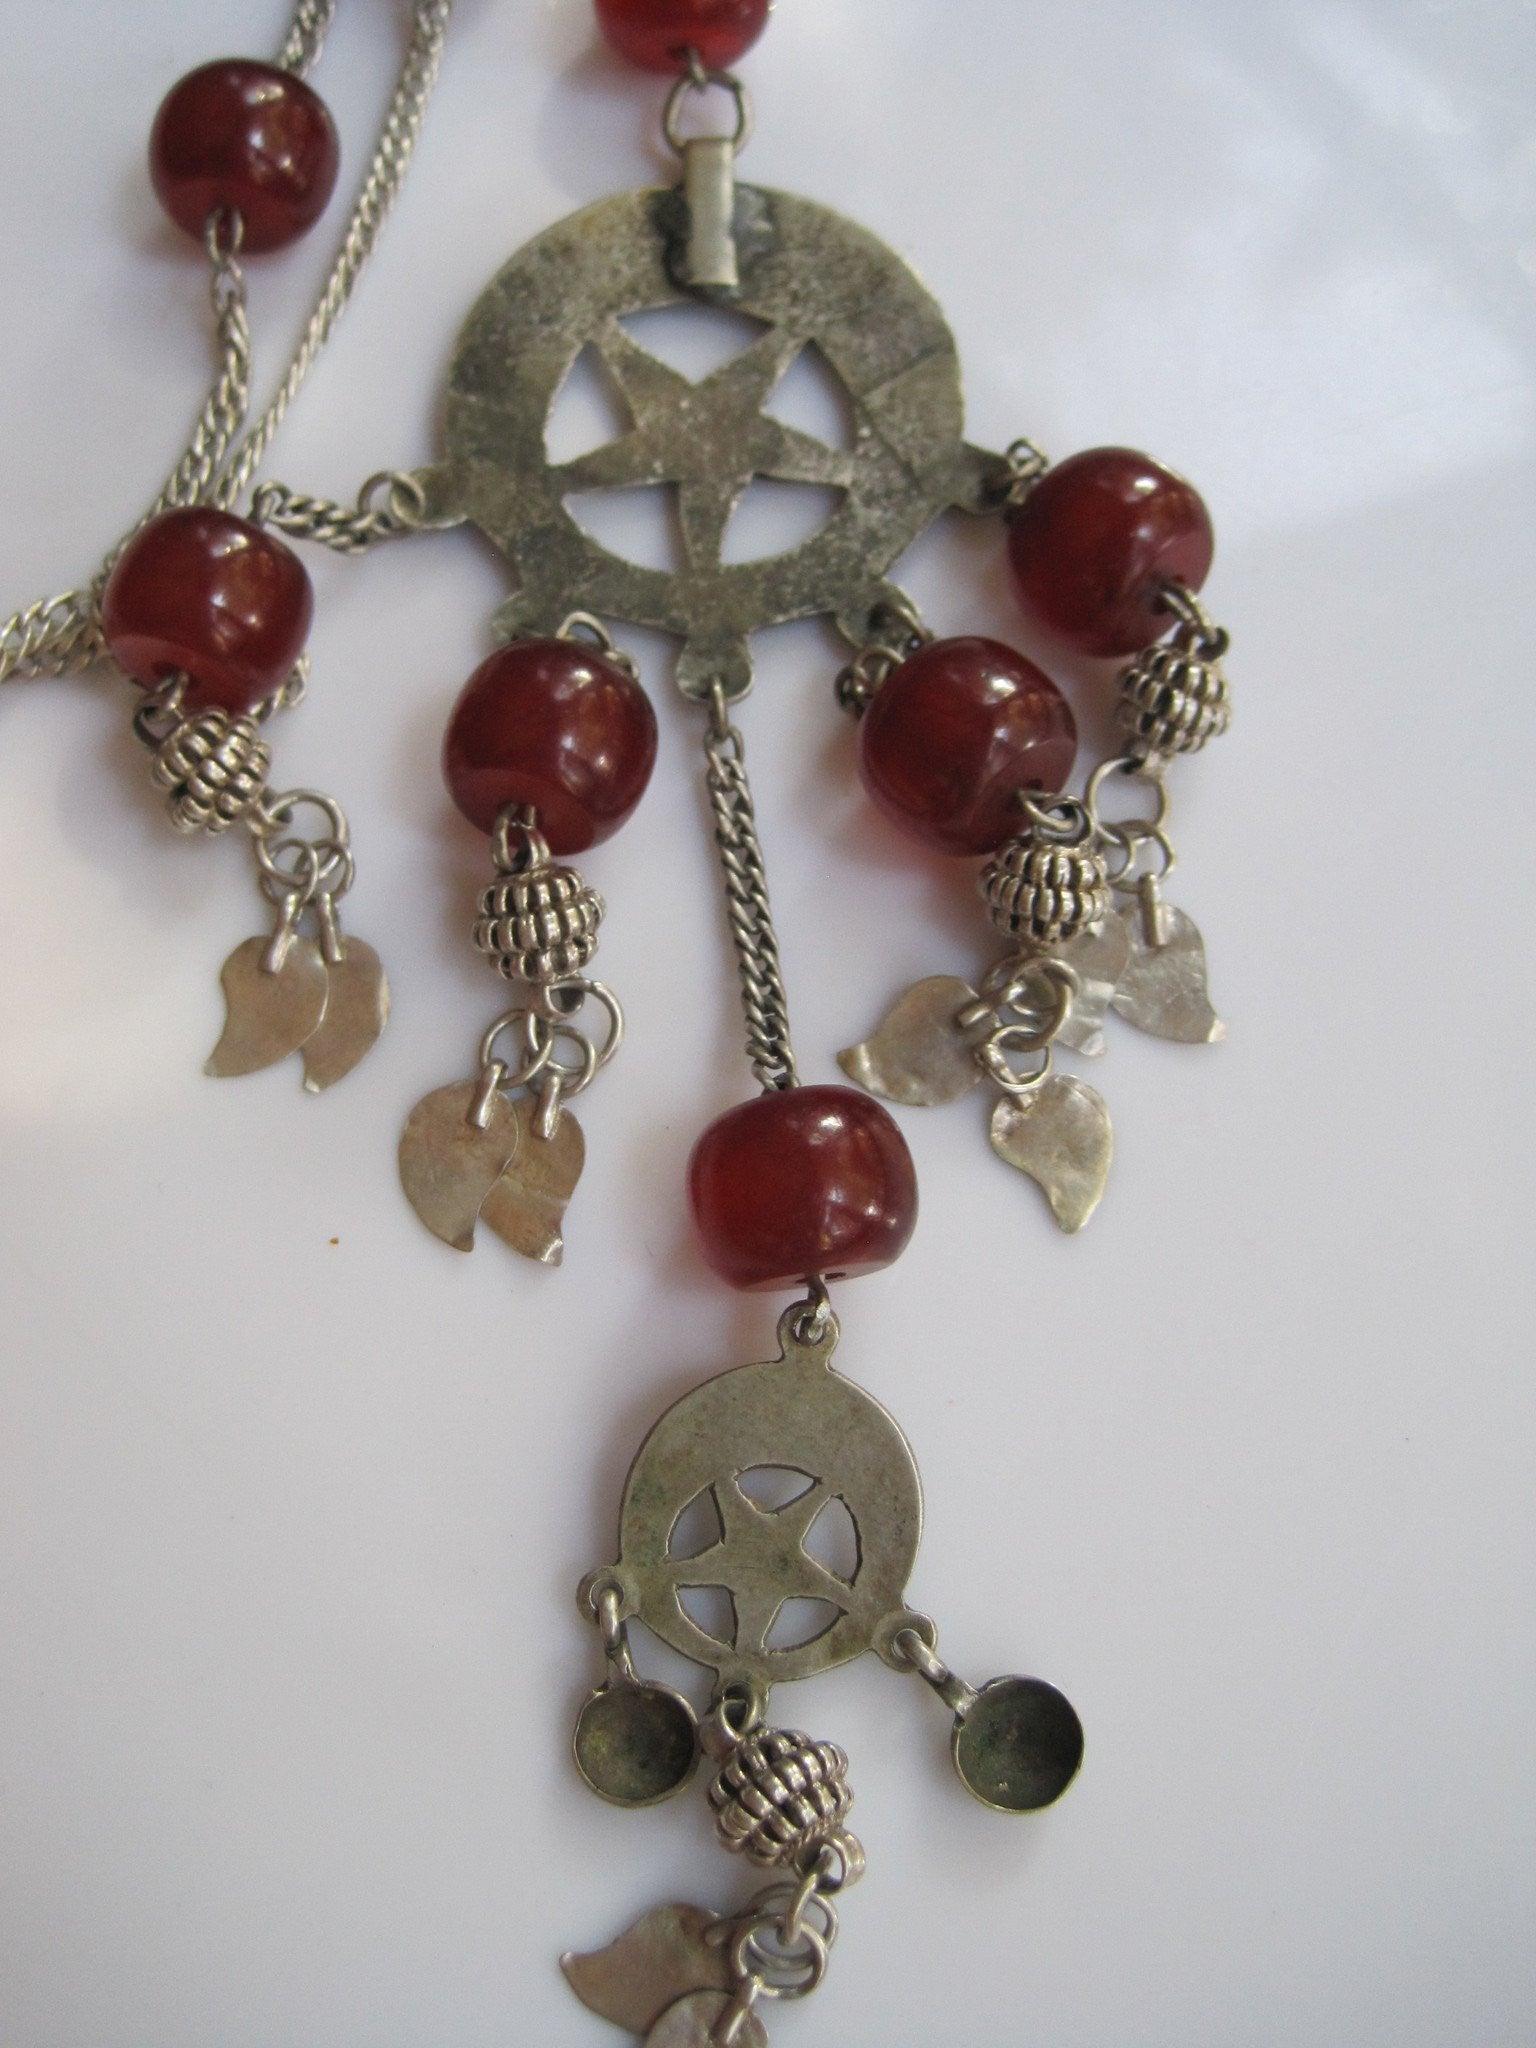 Ottoman pendant necklace